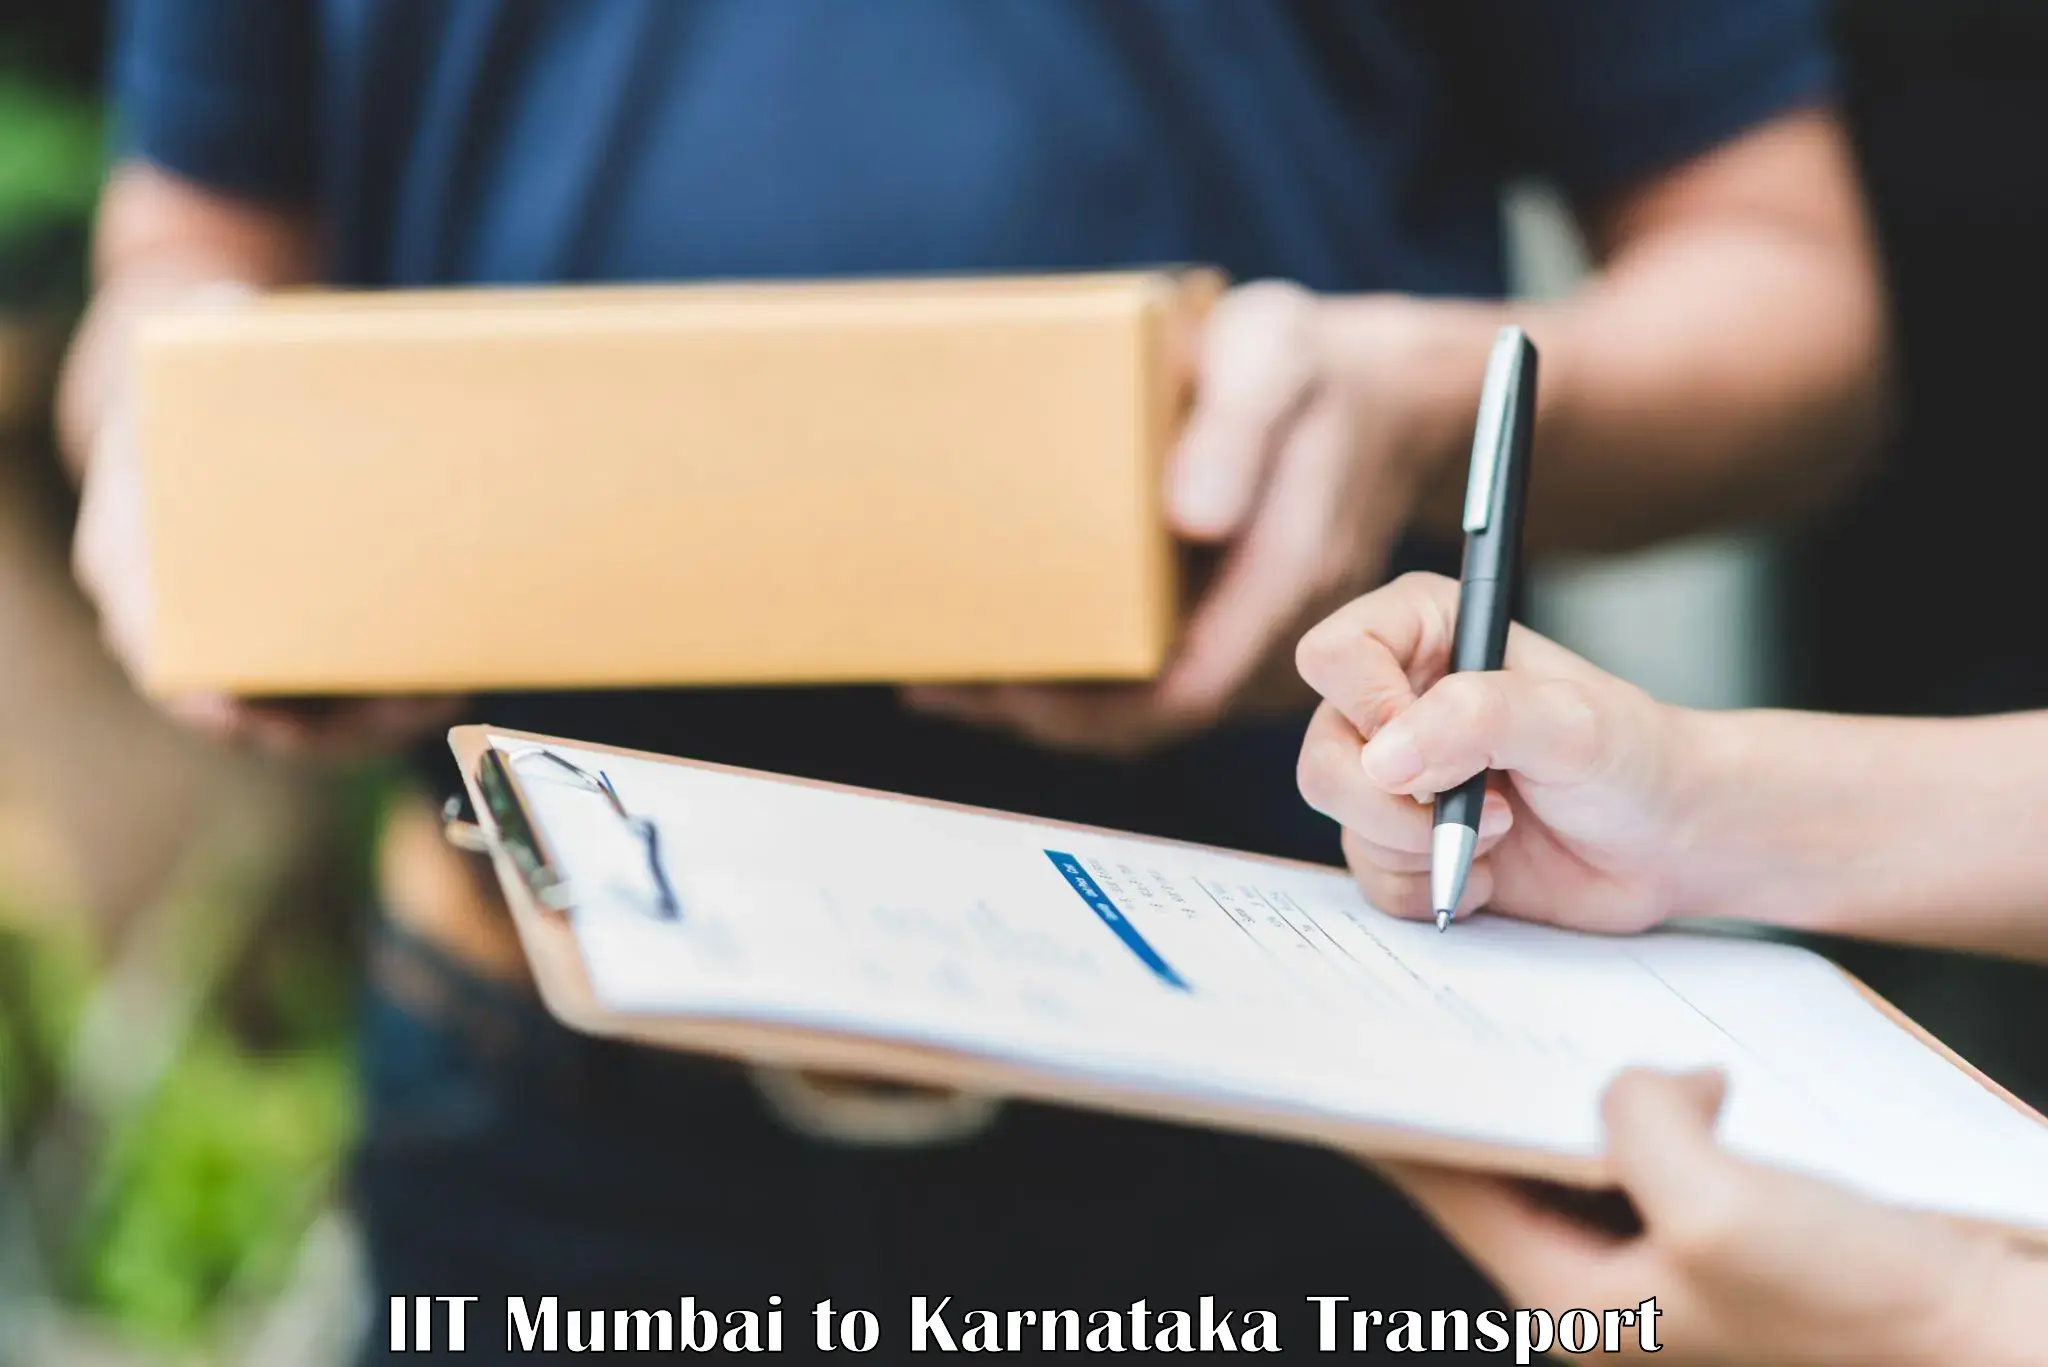 Road transport online services in IIT Mumbai to Kalasa